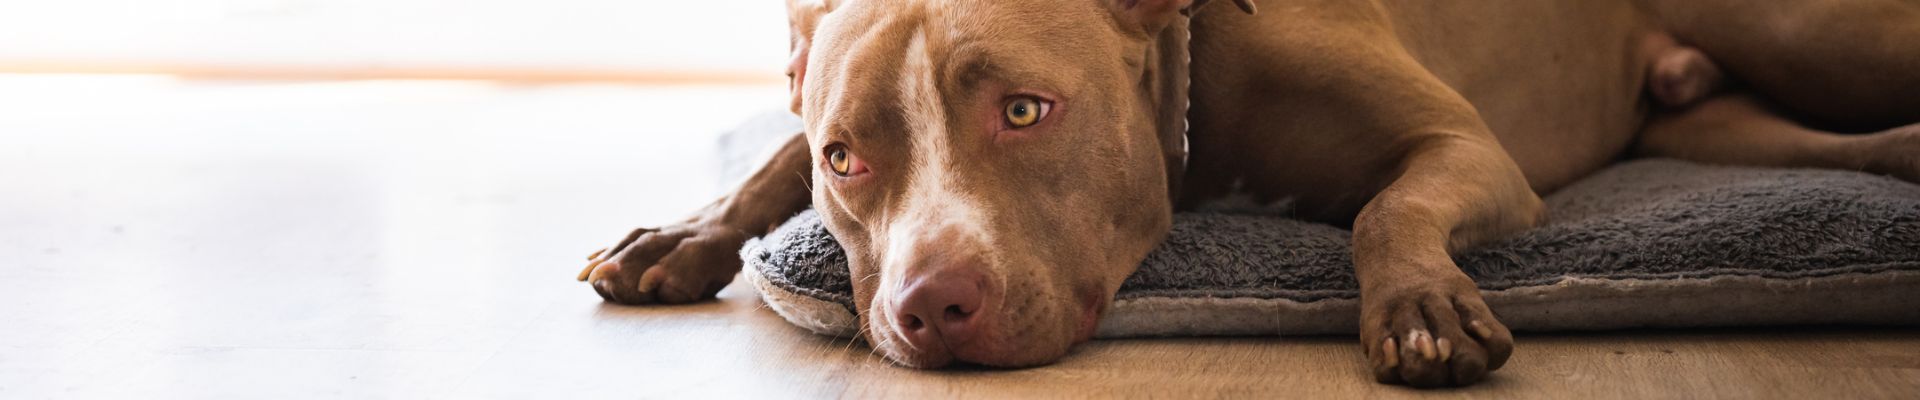 Un perro grande marrón está recostado en el piso sobre una cama de perro